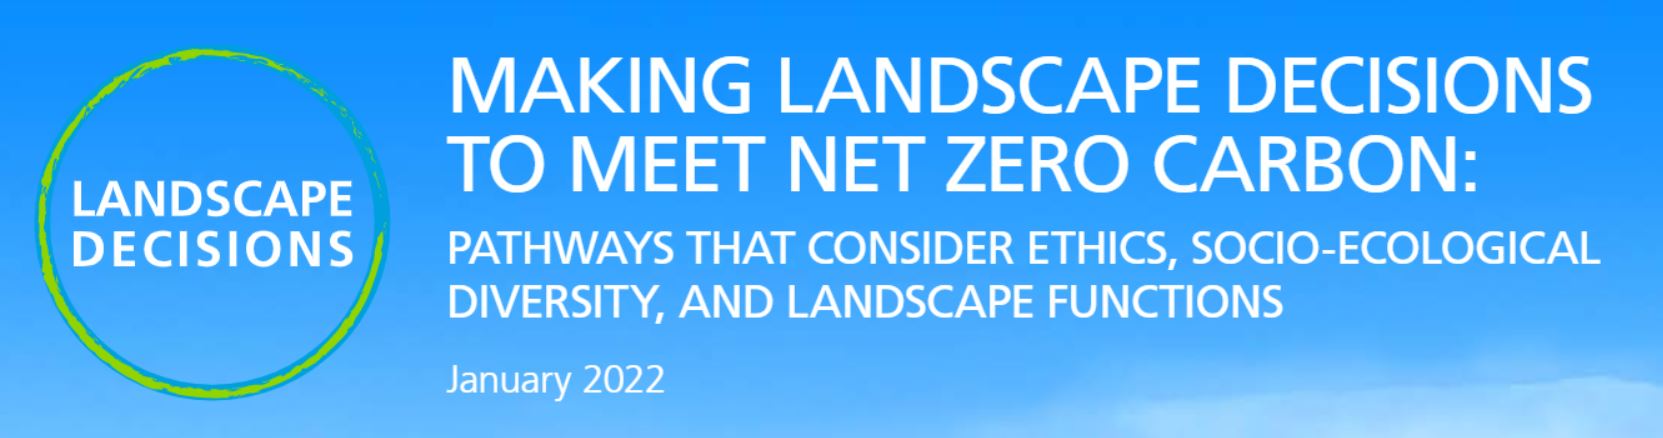 Getting to net zero will require inclusive landscape decisions